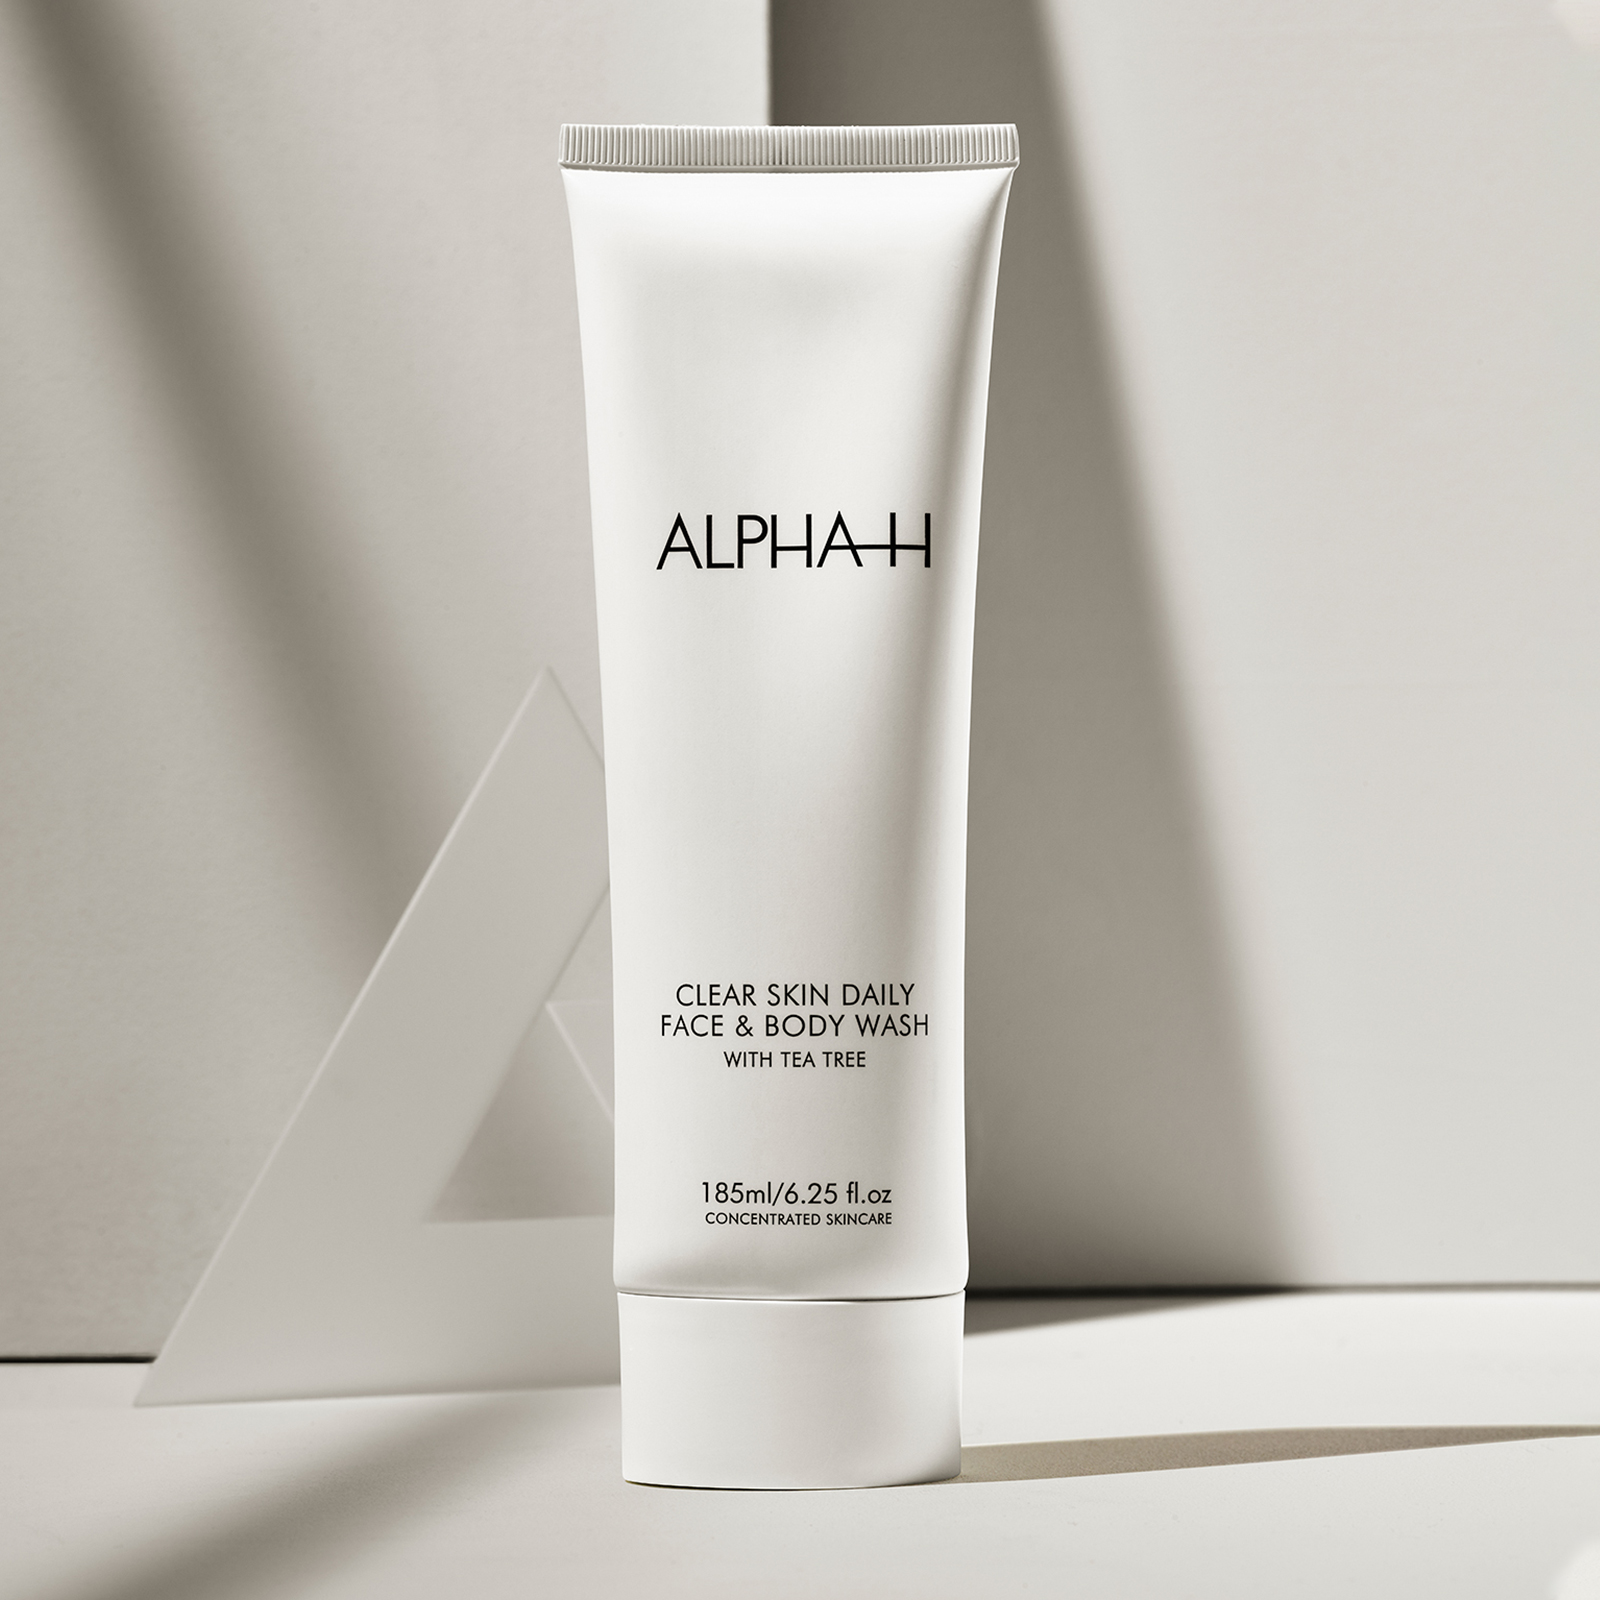 ALPHA-H Clear Skin Daily Face & Body Wash